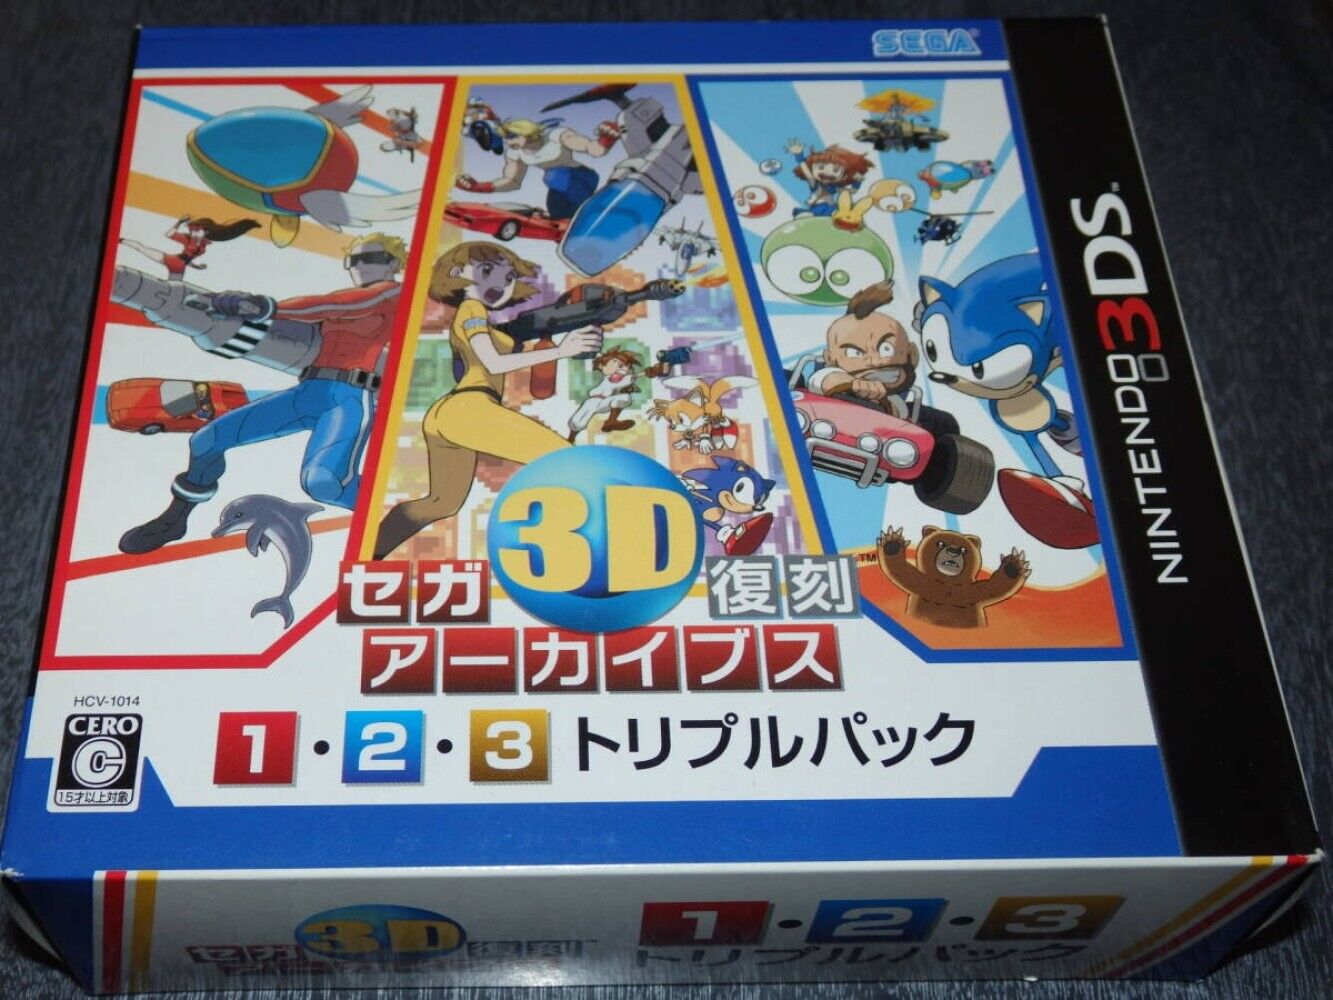 贈り物 セガ3D復刻アーカイブス1・2・3 トリプルパック - 3DS(品